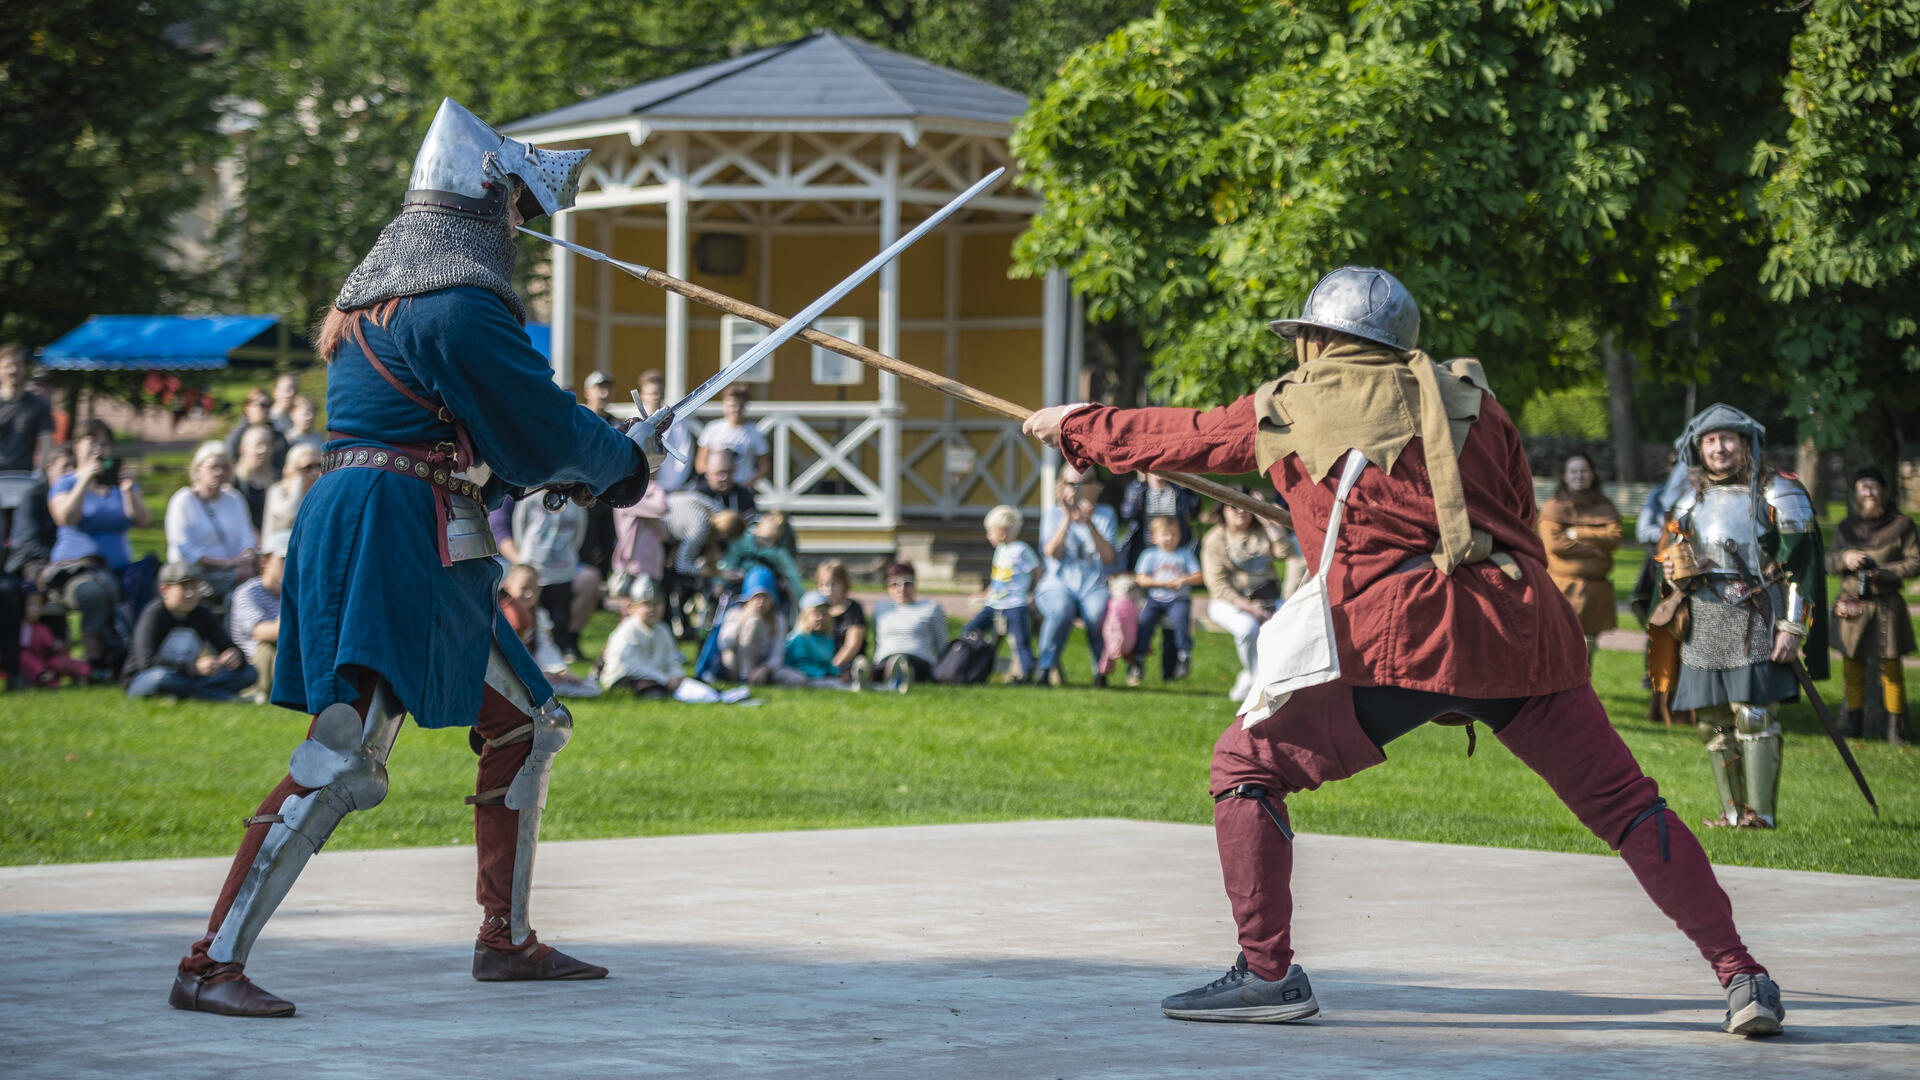 Keskiaikatapahtumassa kaksi haarniskaan puettua taistelijaa miekkailee.